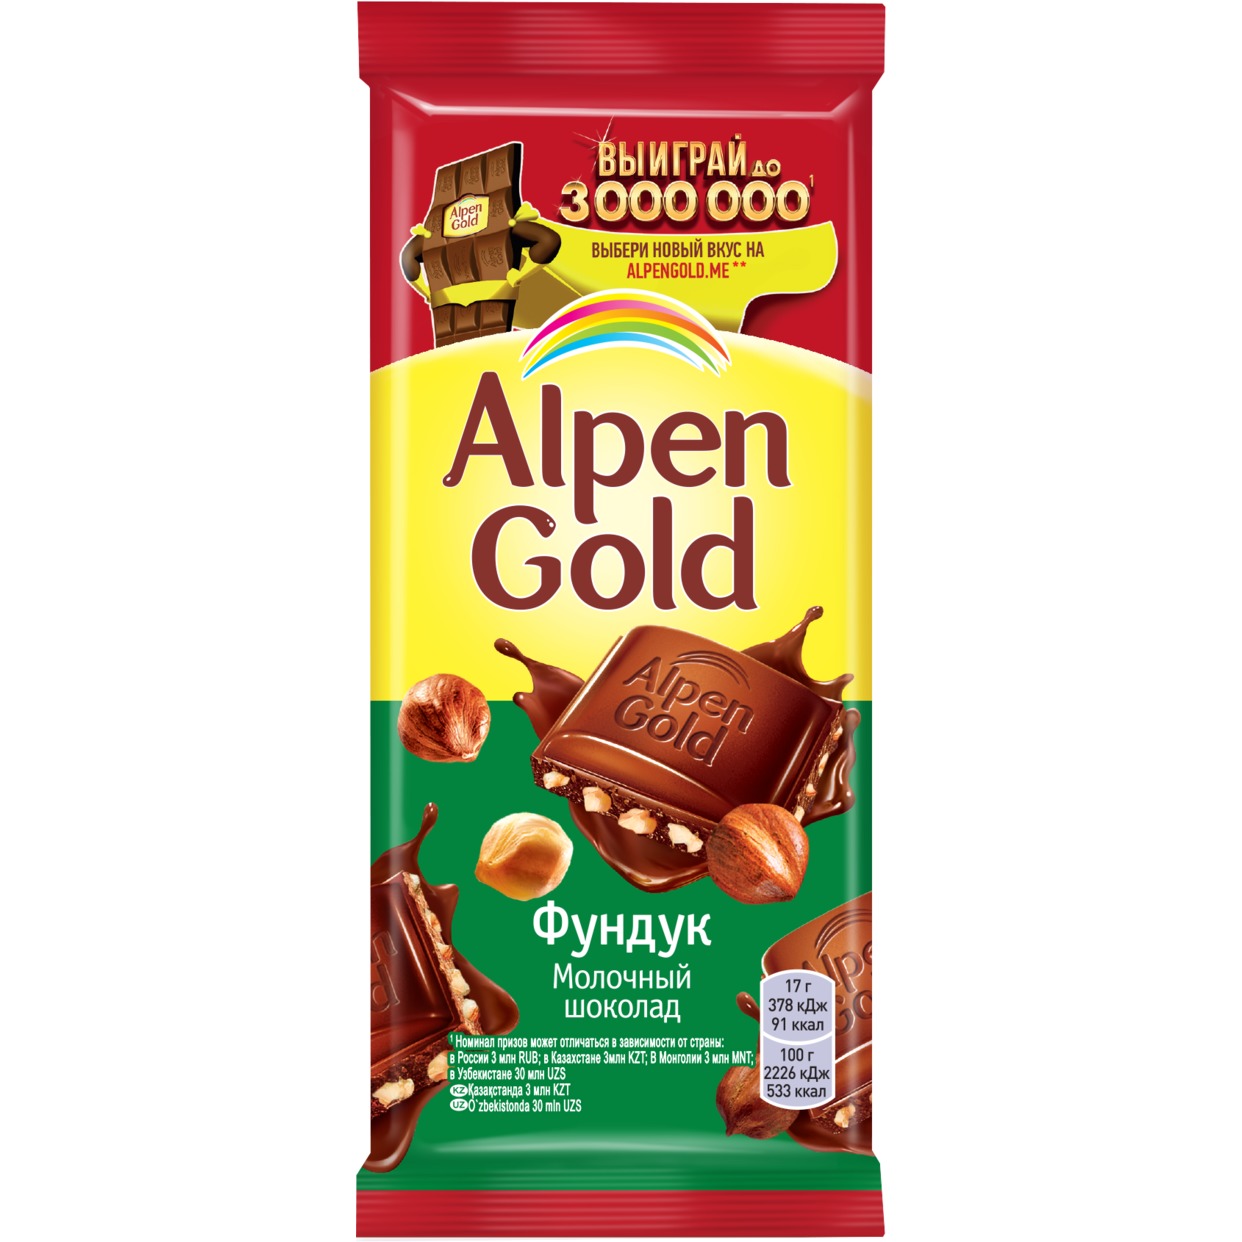 Шоколад молочный Alpen Gold Альпен Гольд с фундуком, 85г по акции в Пятерочке